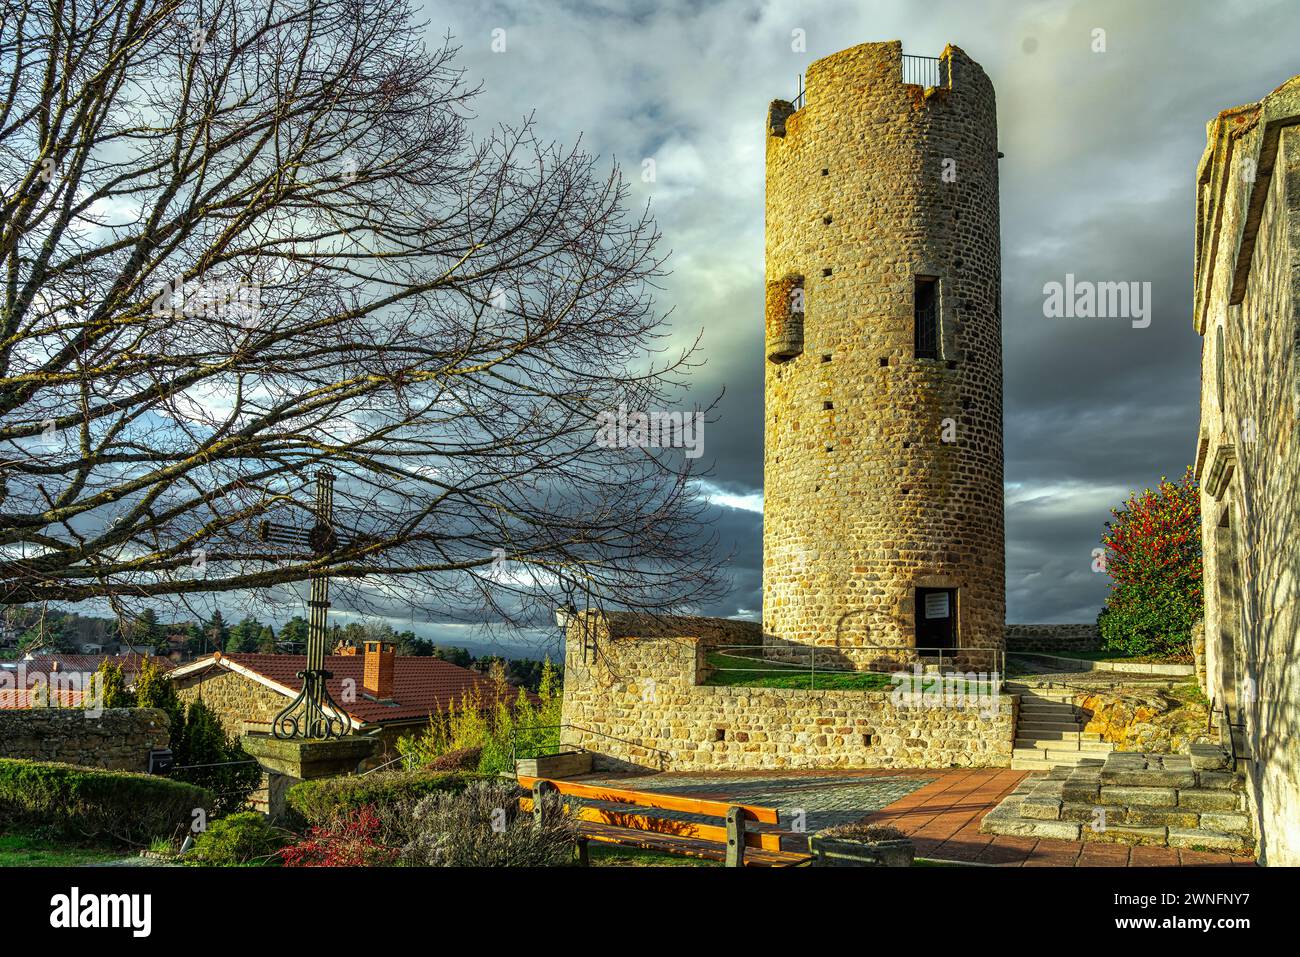 La Torre medievale di Chambles, costruita nell'XI secolo e alta 18 metri. Chambles, dipartimento della Loira, Francia Foto Stock